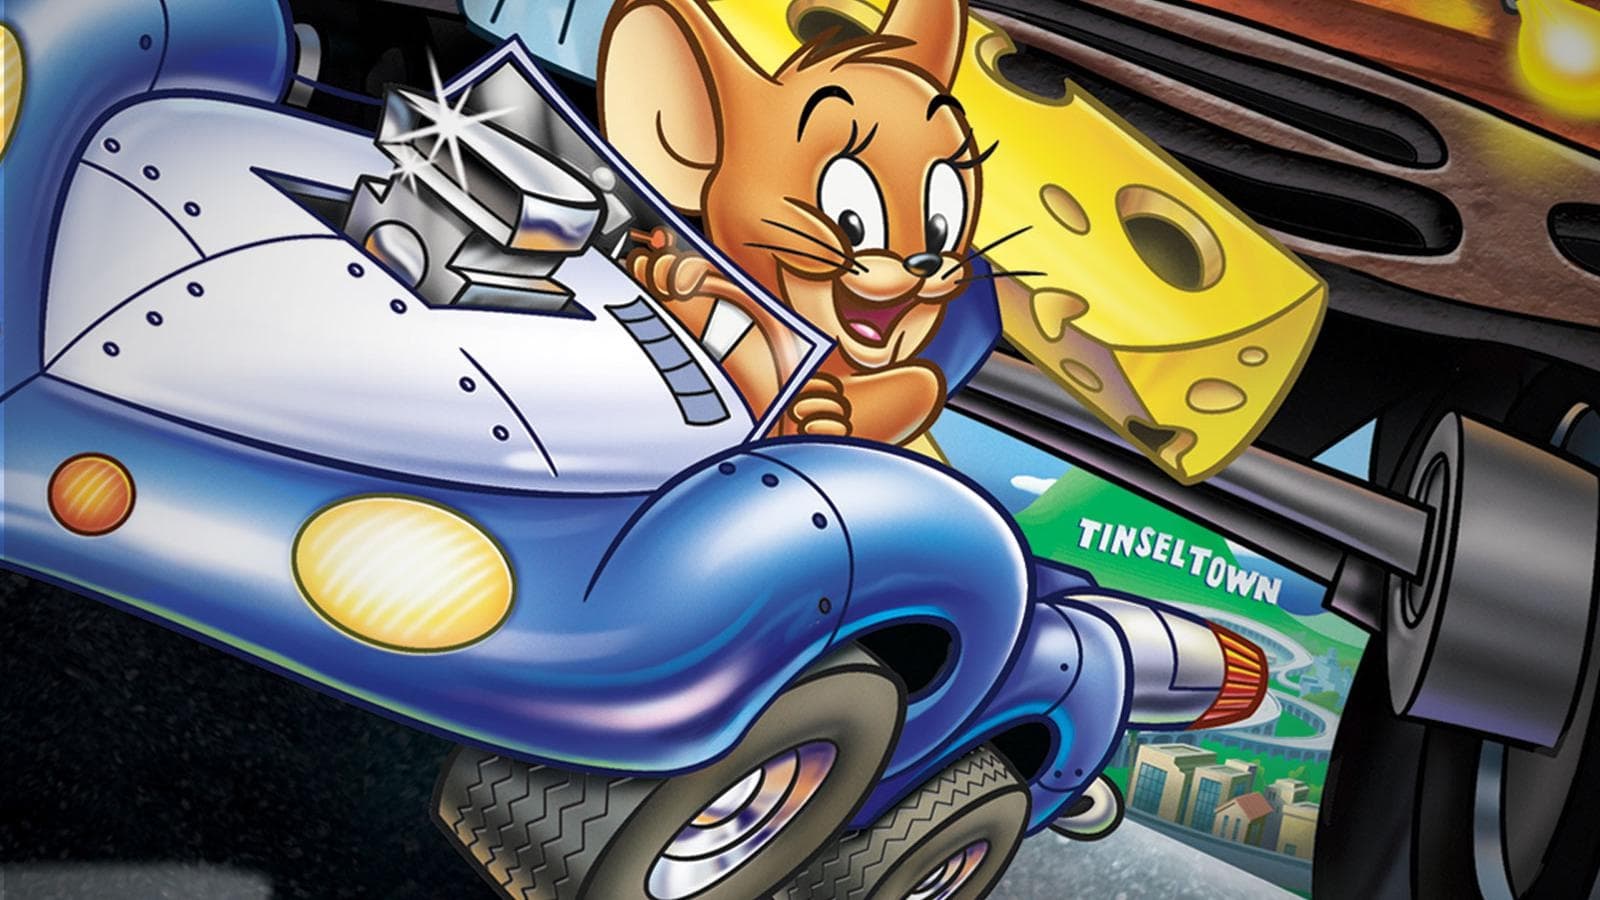 Tom et Jerry : La course de l’année (2005)